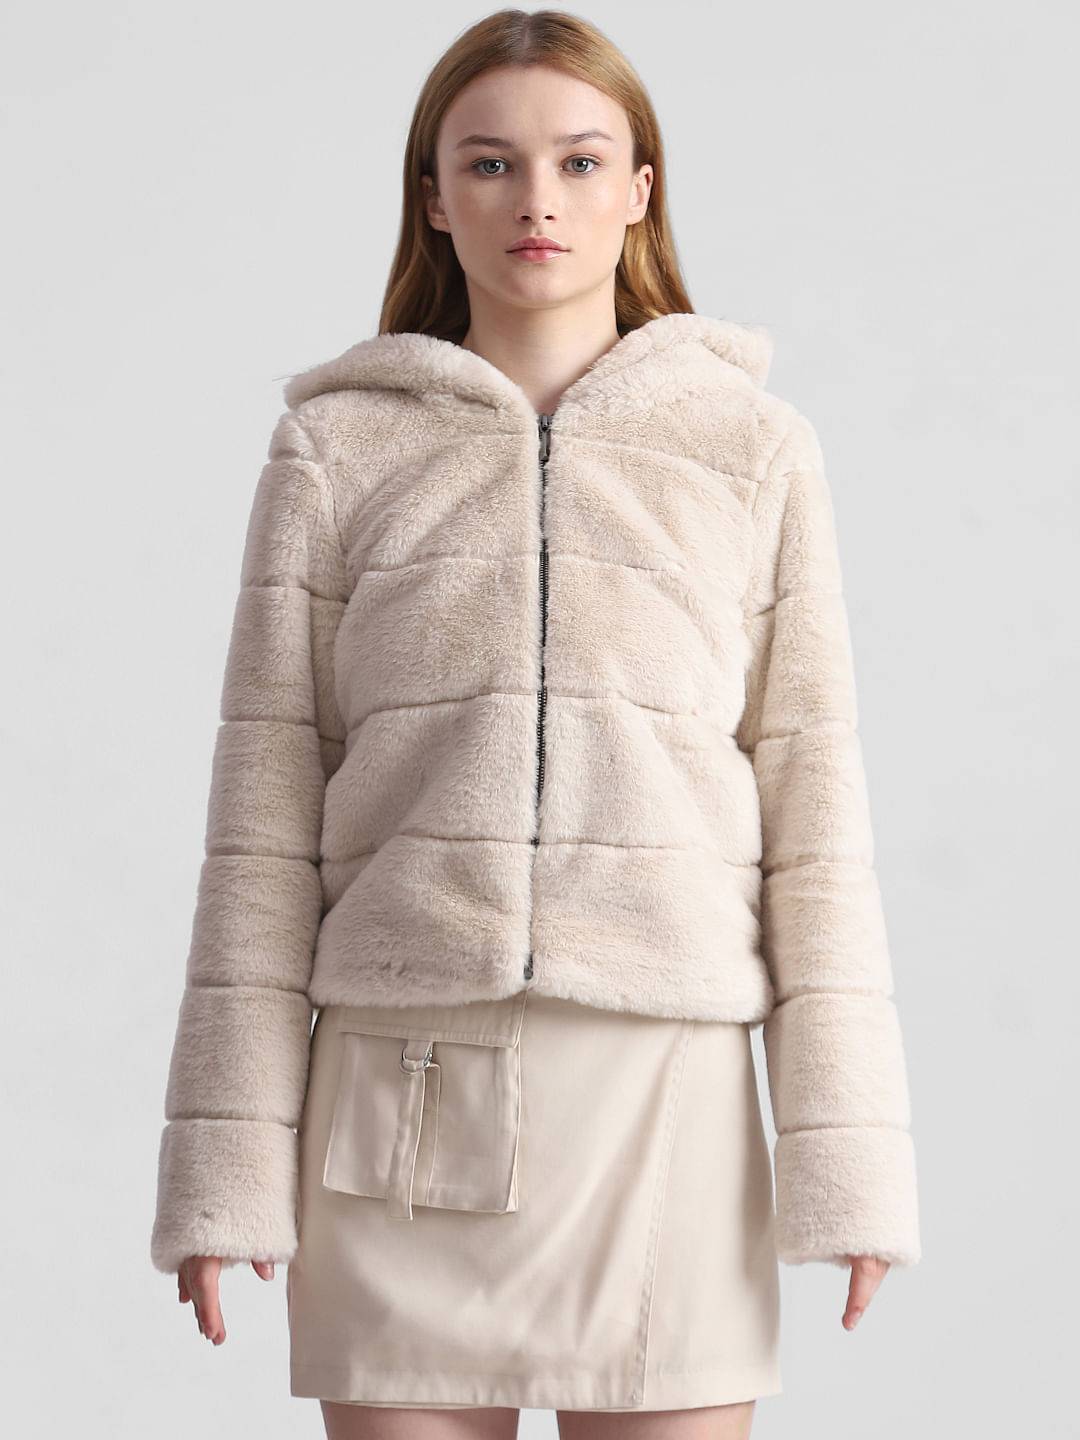 Beige Faux Fur Hooded Winter Jacket|113266101-Moonbeam